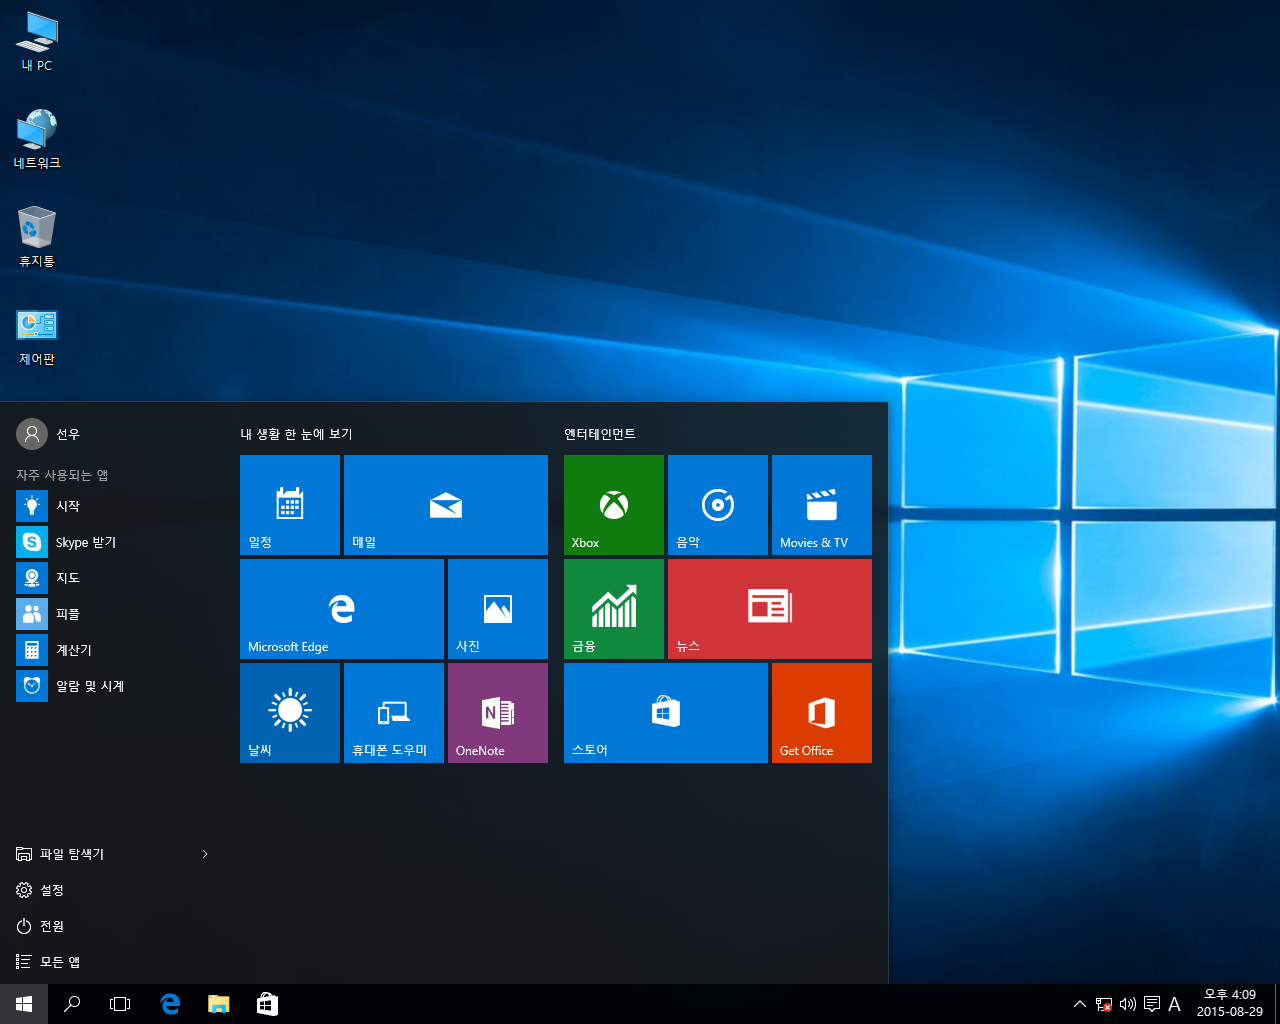 Windows 10 list. ОС виндовс 10. Меню Windows 10. Начальный экран Windows 10. Винда 10 меню.